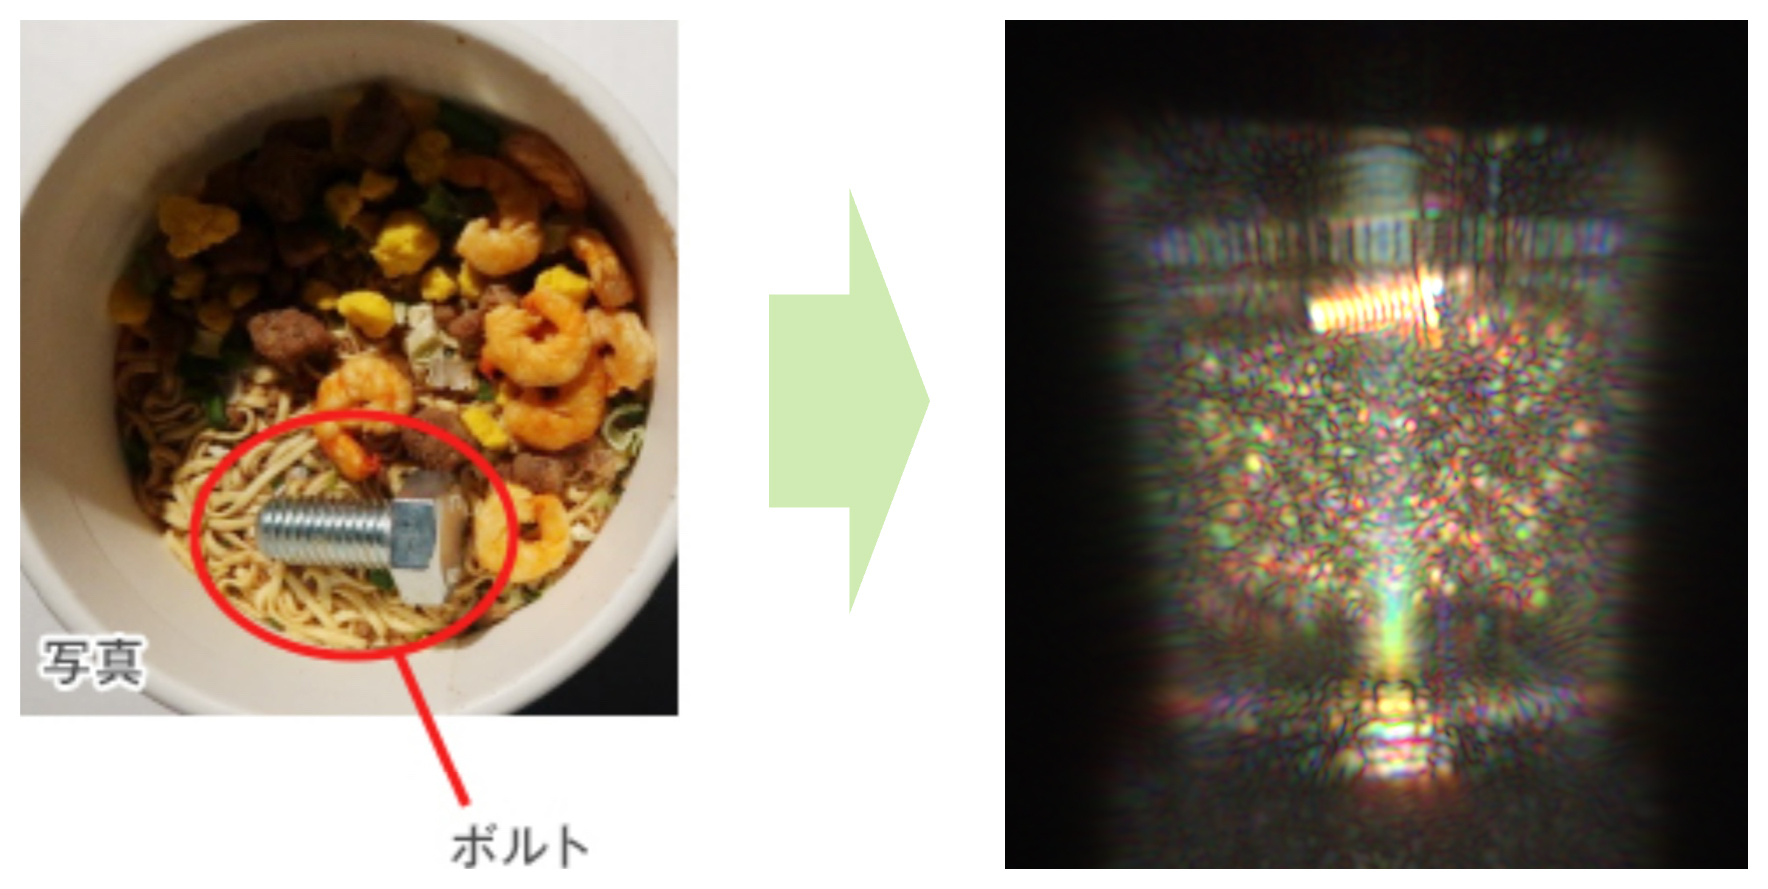 画像 カップ麺の容器の中のボルトを検出しているテラヘルツ画像